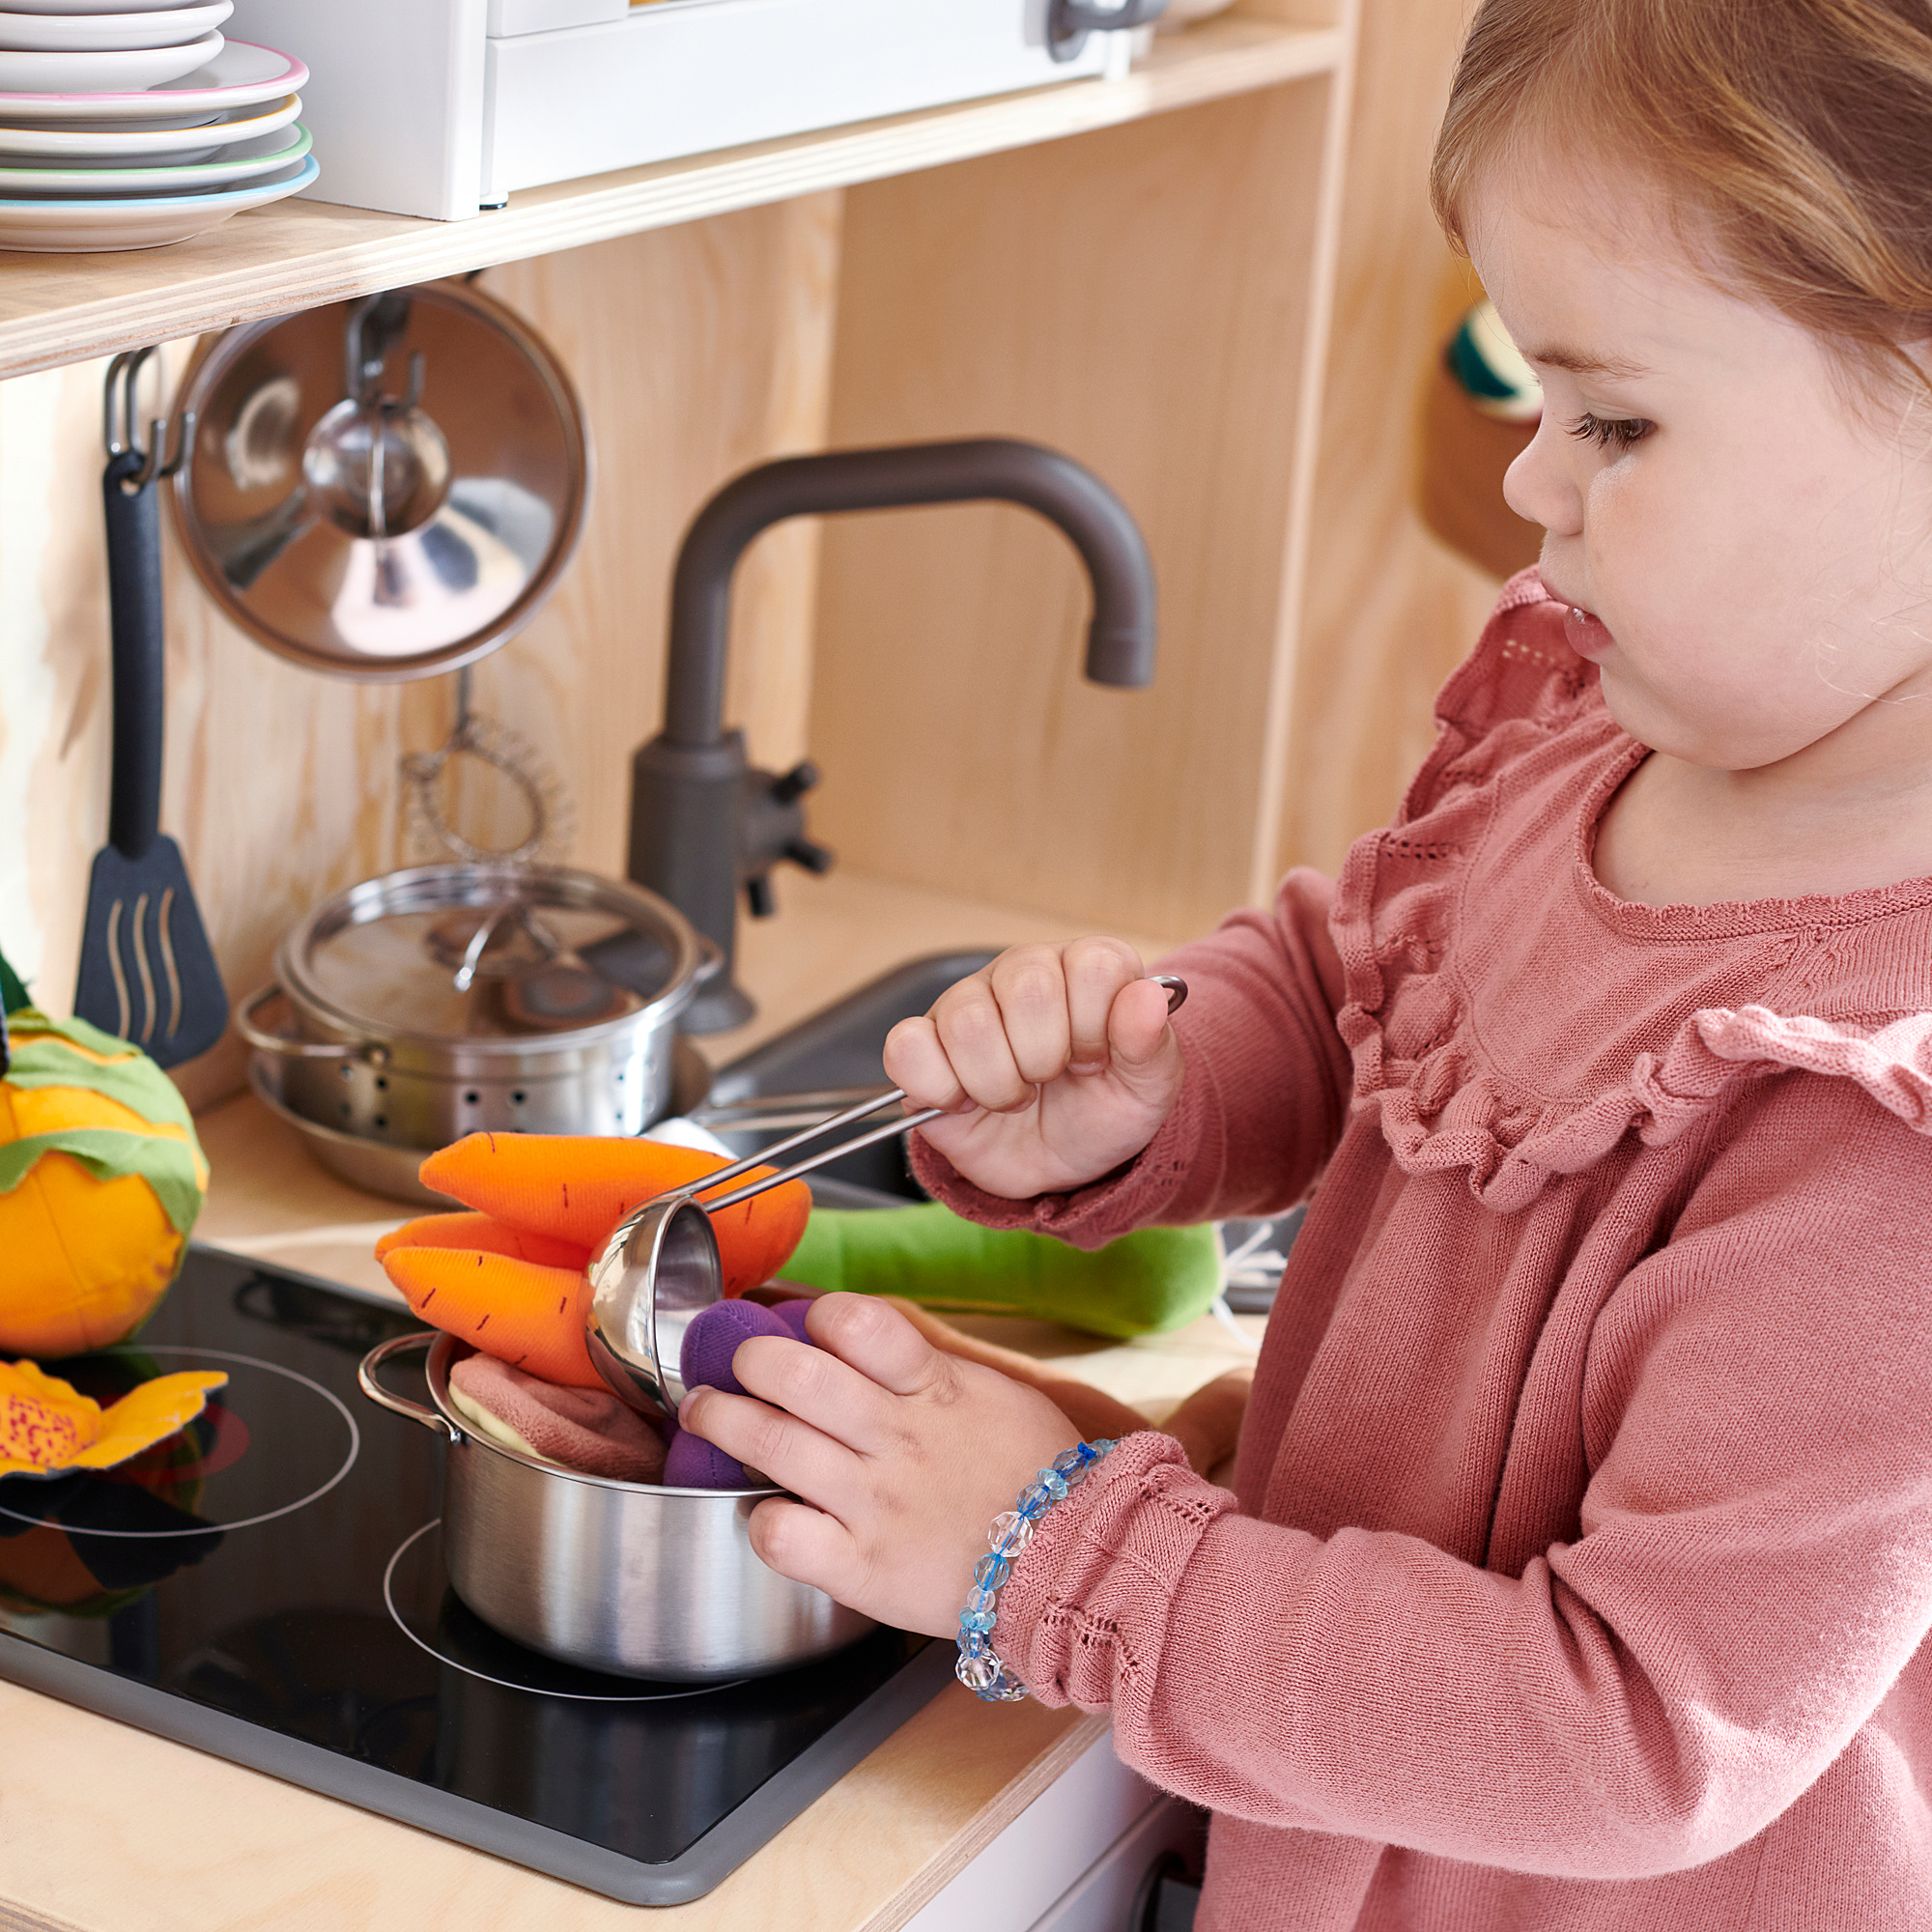 DUKTIG 5-piece toy kitchen utensil set